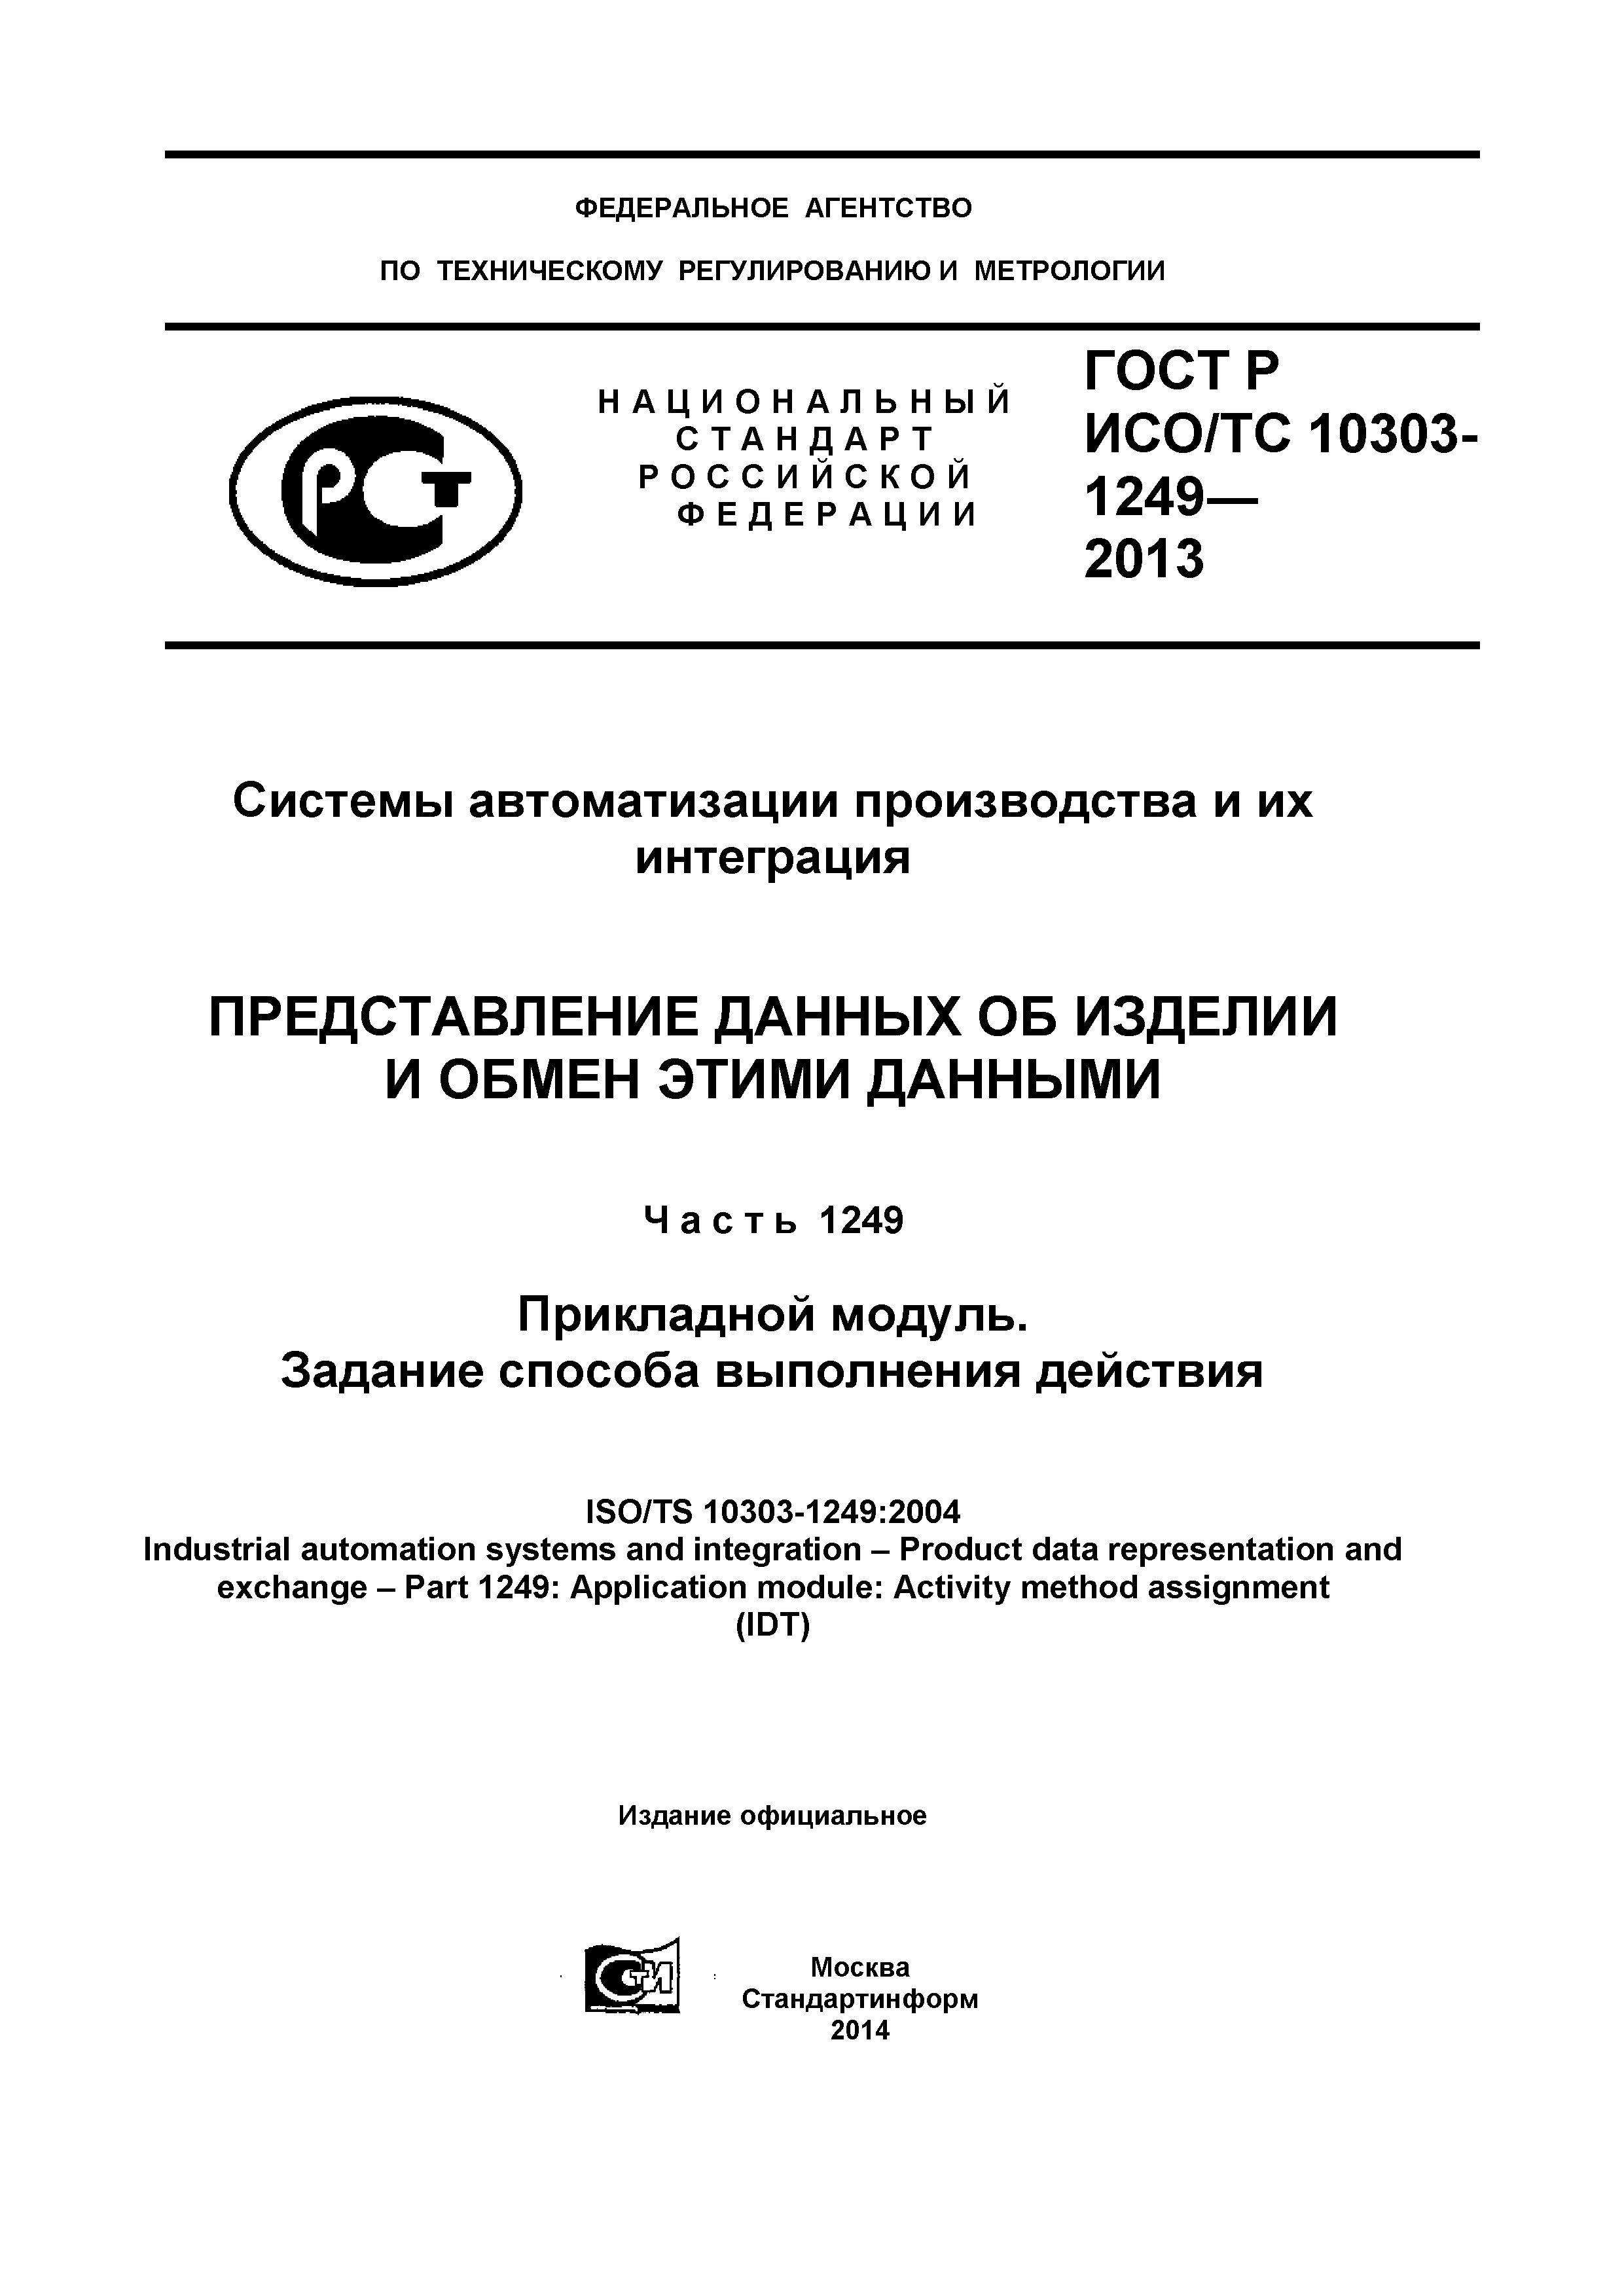 ГОСТ Р ИСО/ТС 10303-1249-2013